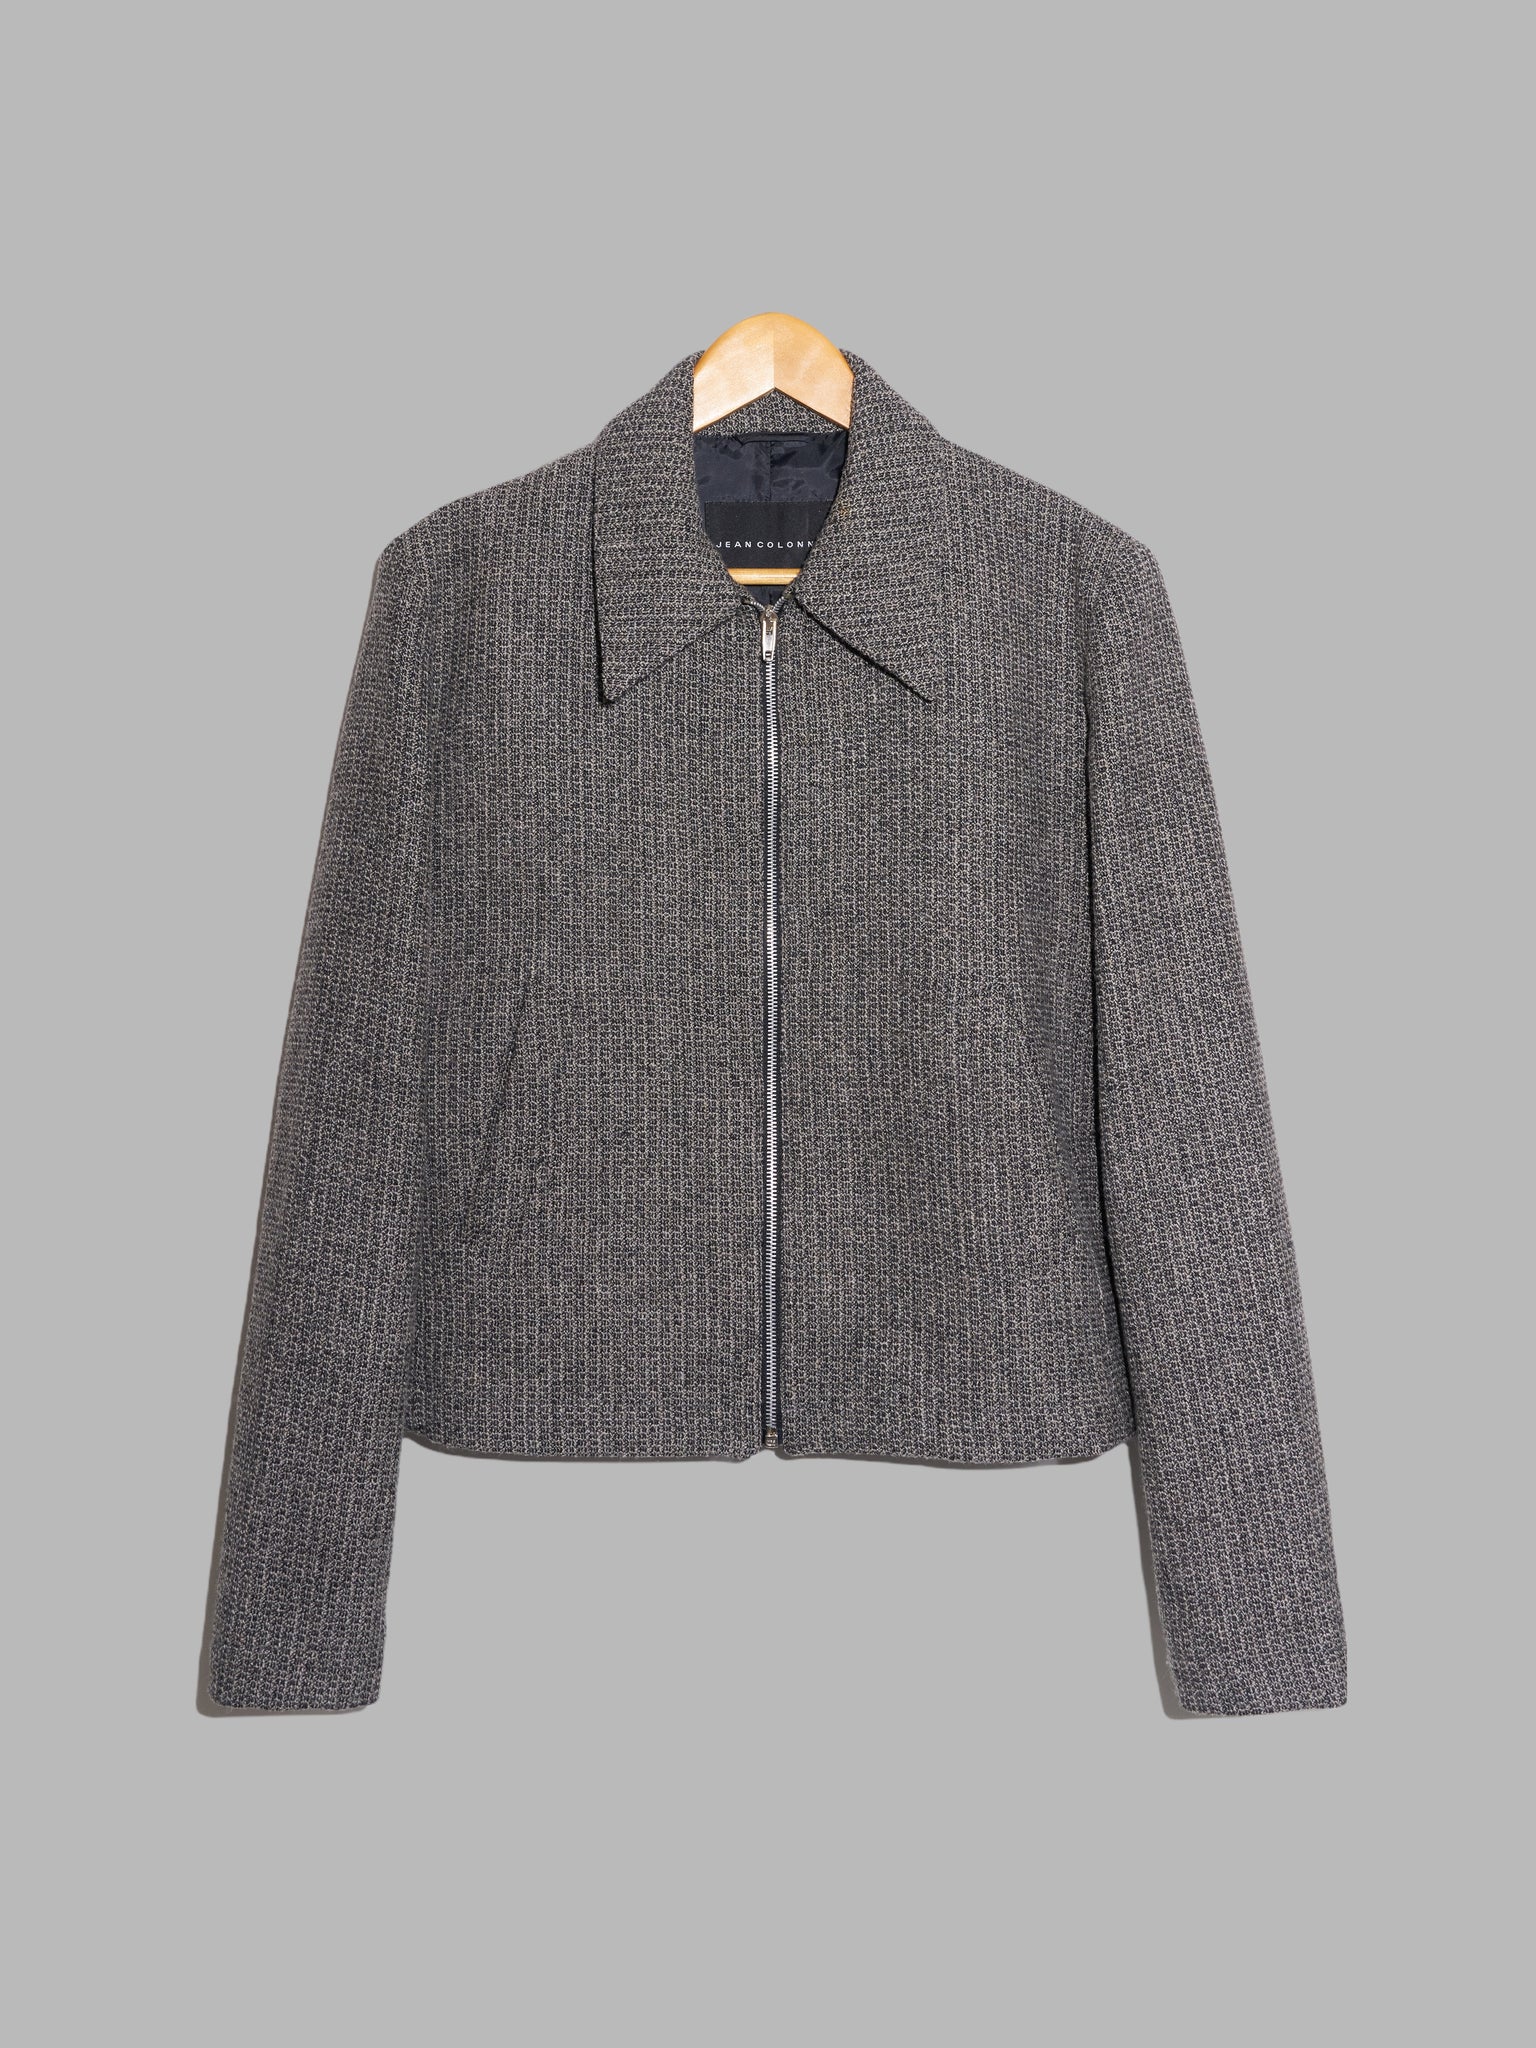 Jean Colonna textured grey brown wool blend zip jacket - size 46